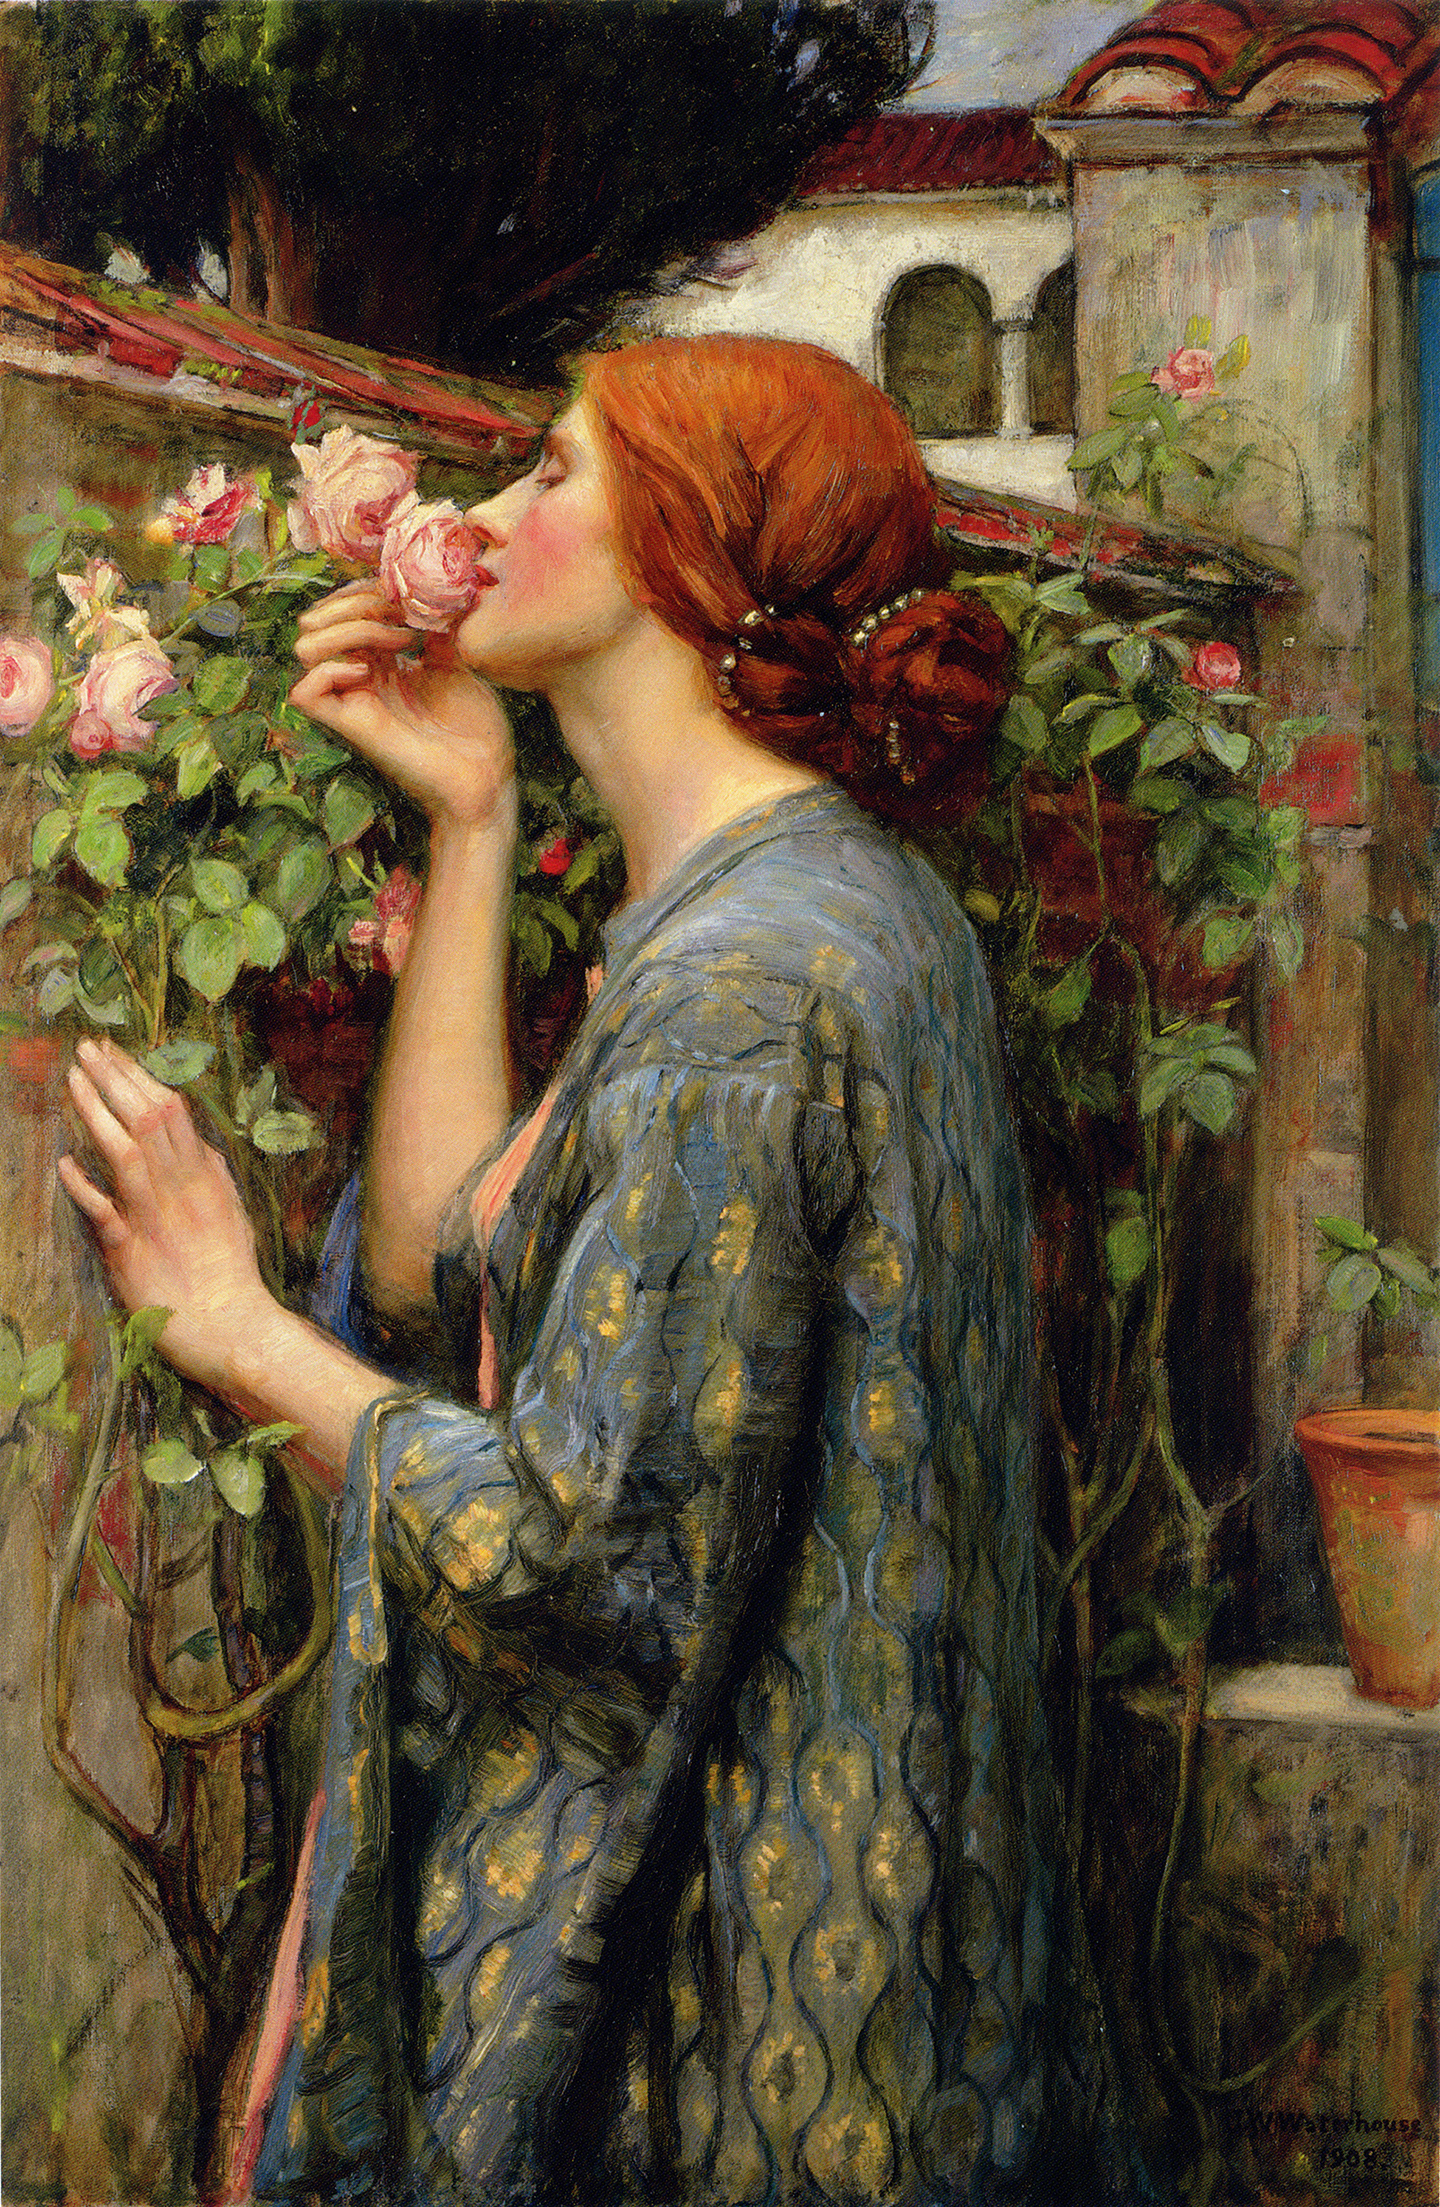 Bức tranh “The Soul of the Rose” (Linh Hồn của Hoa Hồng), năm 1908, của họa sỹ John William Waterhouse. Sơn dầu trên vải canvas; 34 7/10 inches x 23 2/10 inches